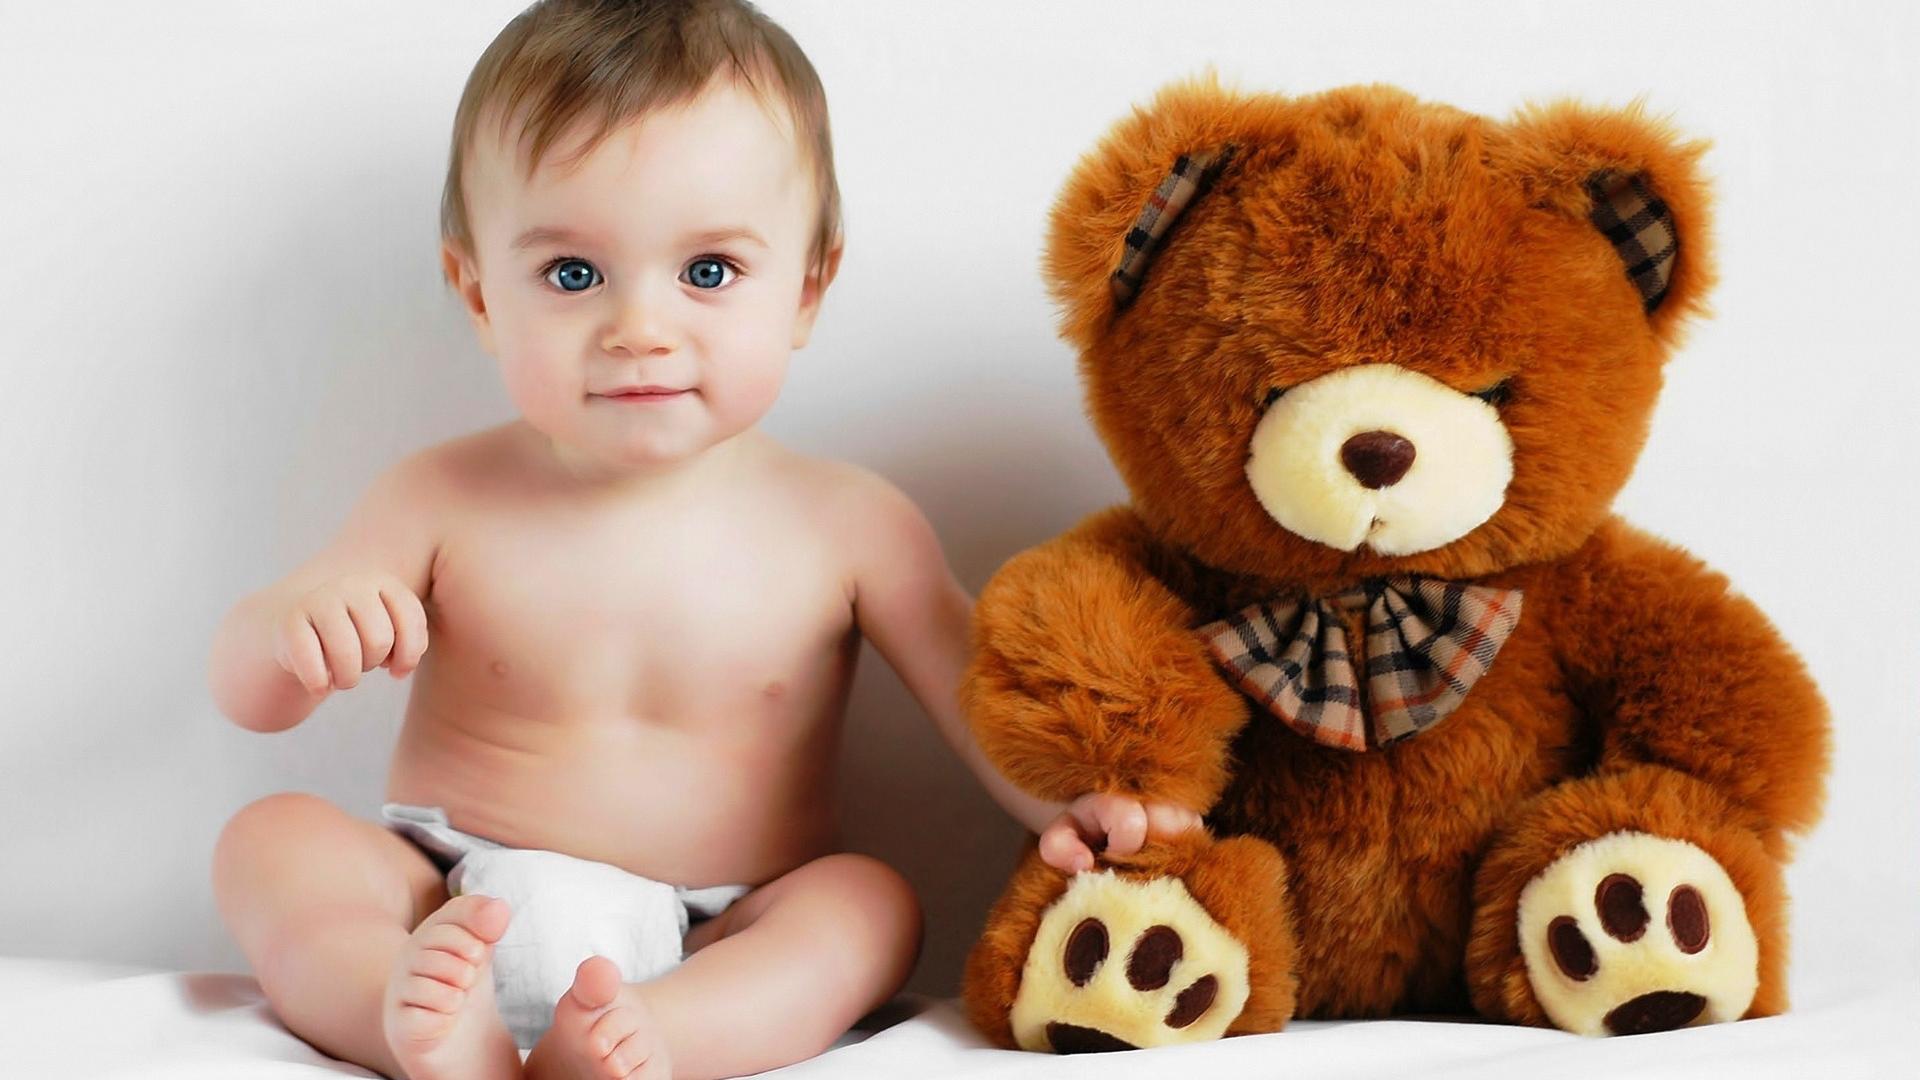 Cute Baby Boy With Teddy Bear